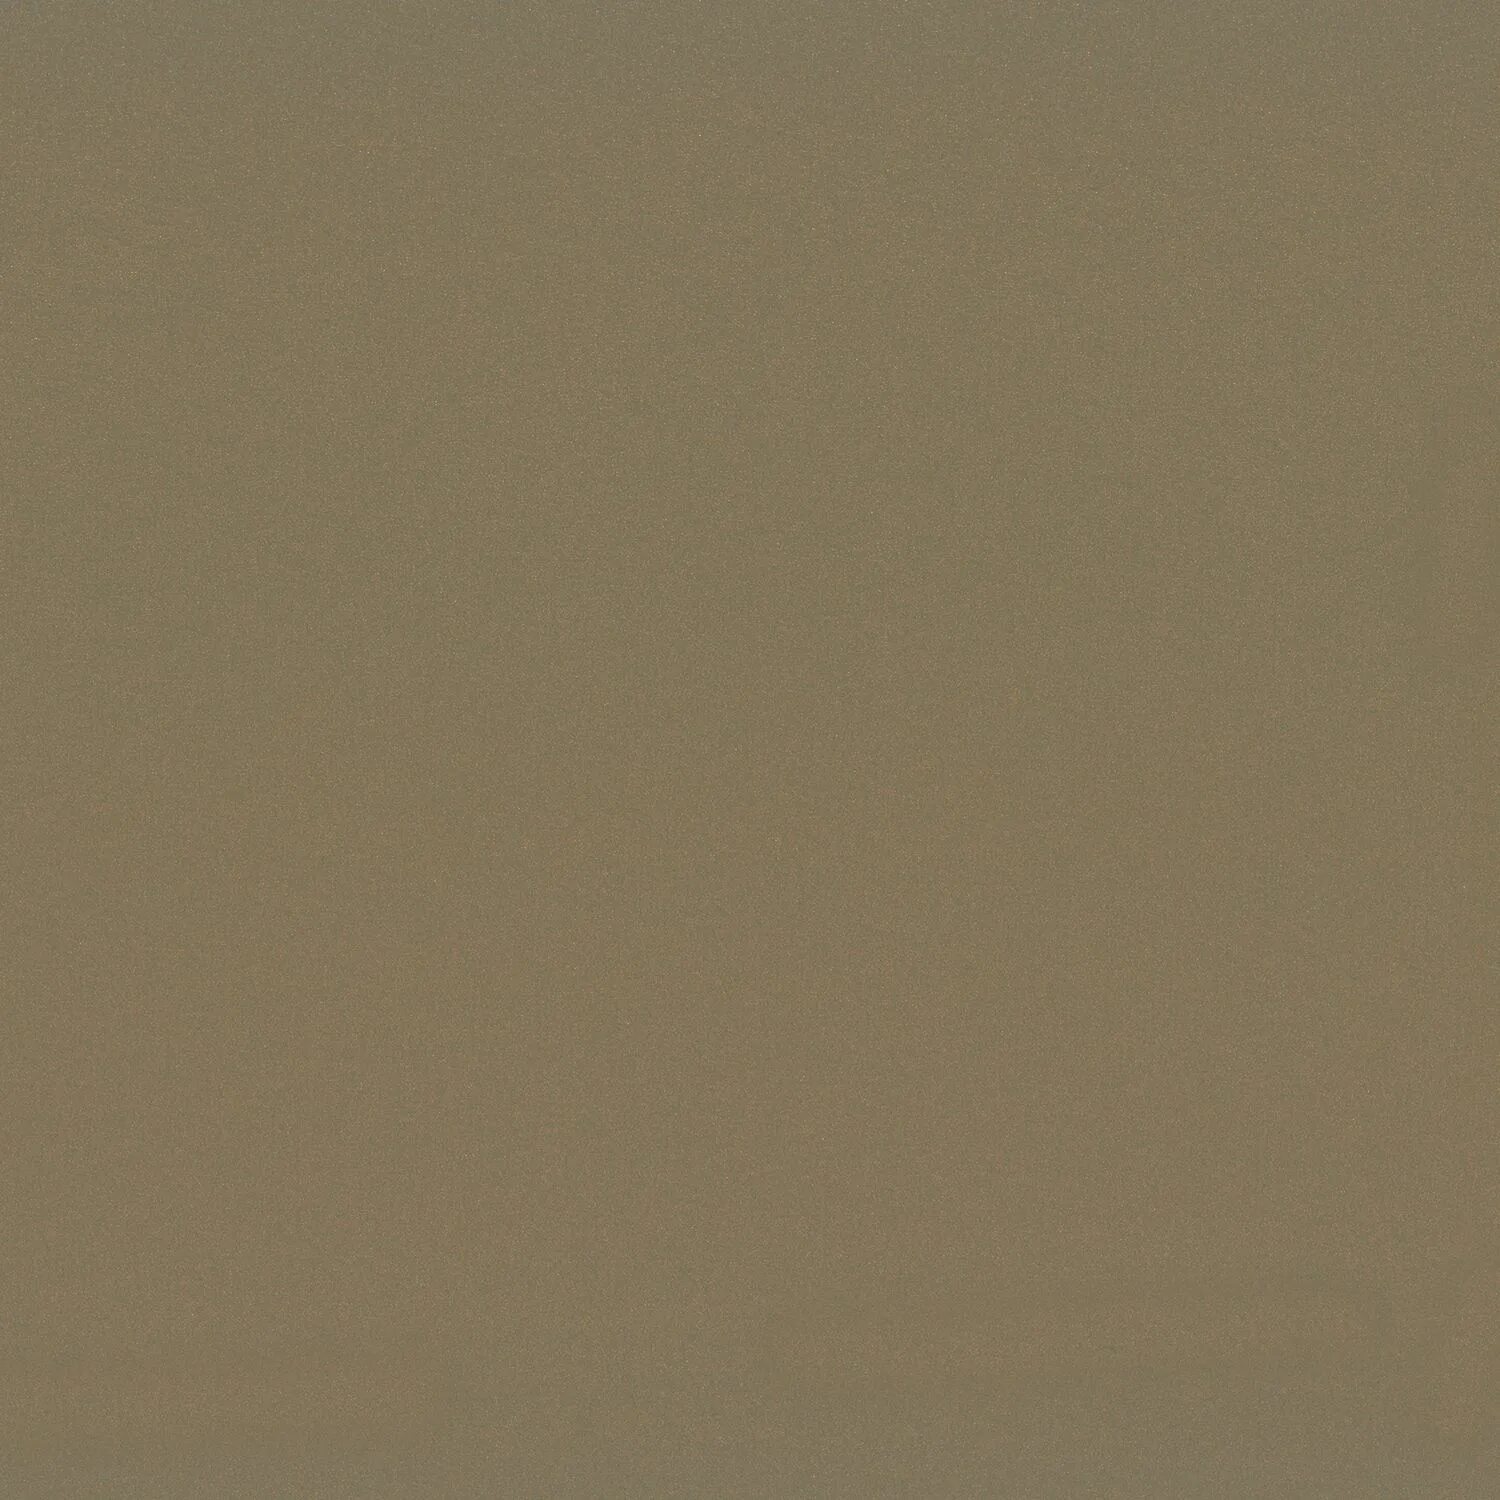 74 26 10. Краска Lanors Mons серый. Плитка Калейдоскоп серо бежевый. Обои as Creation x-ray 34248-8. Обои BN material World 219851.